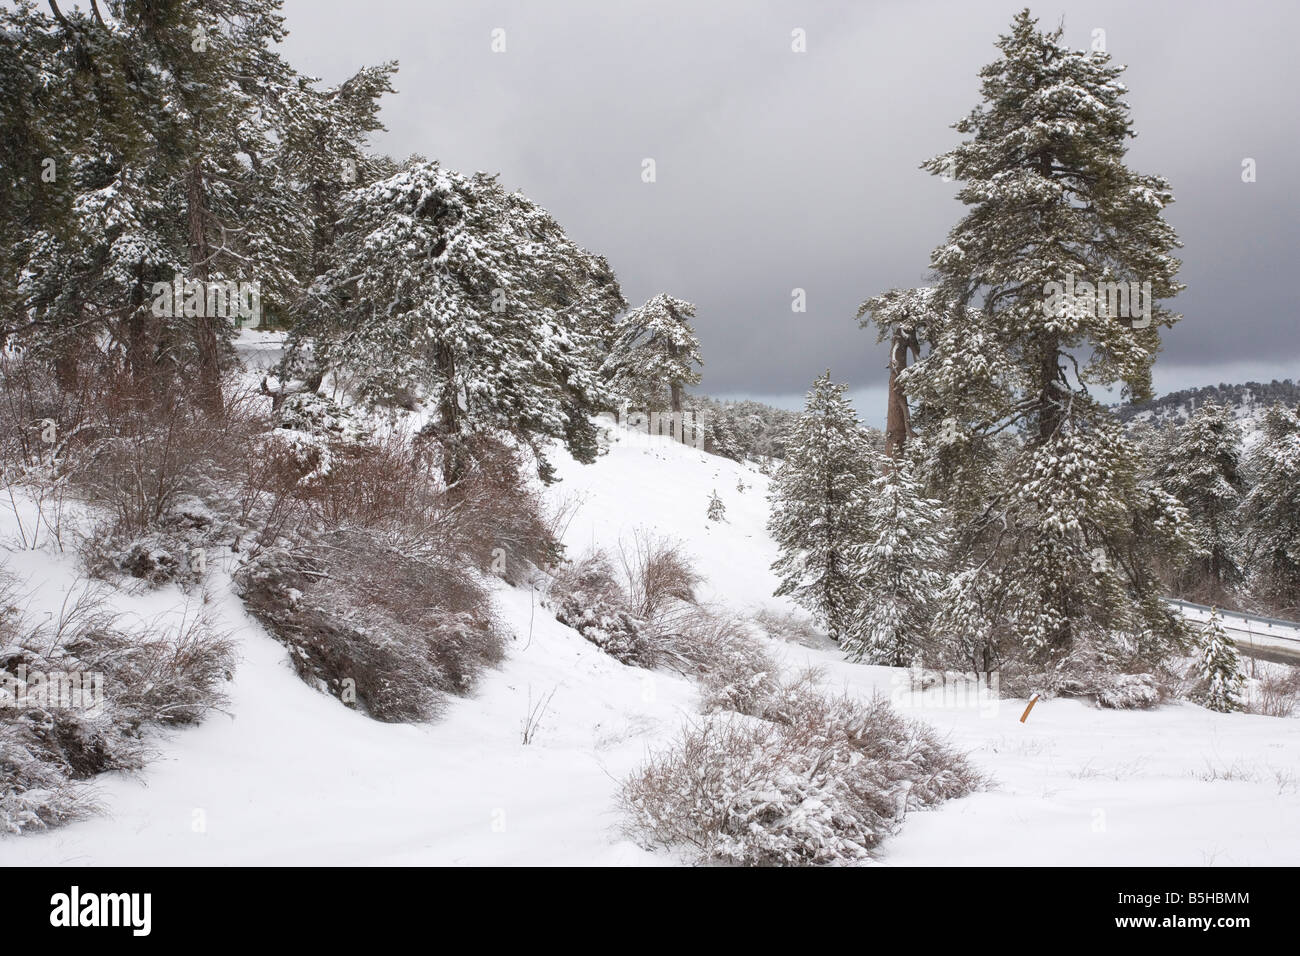 Pino negro de Pinus nigra ssp. pallasiana bosque en las altas montañas de Troodos sur de Chipre a finales del invierno, la nieve Foto de stock